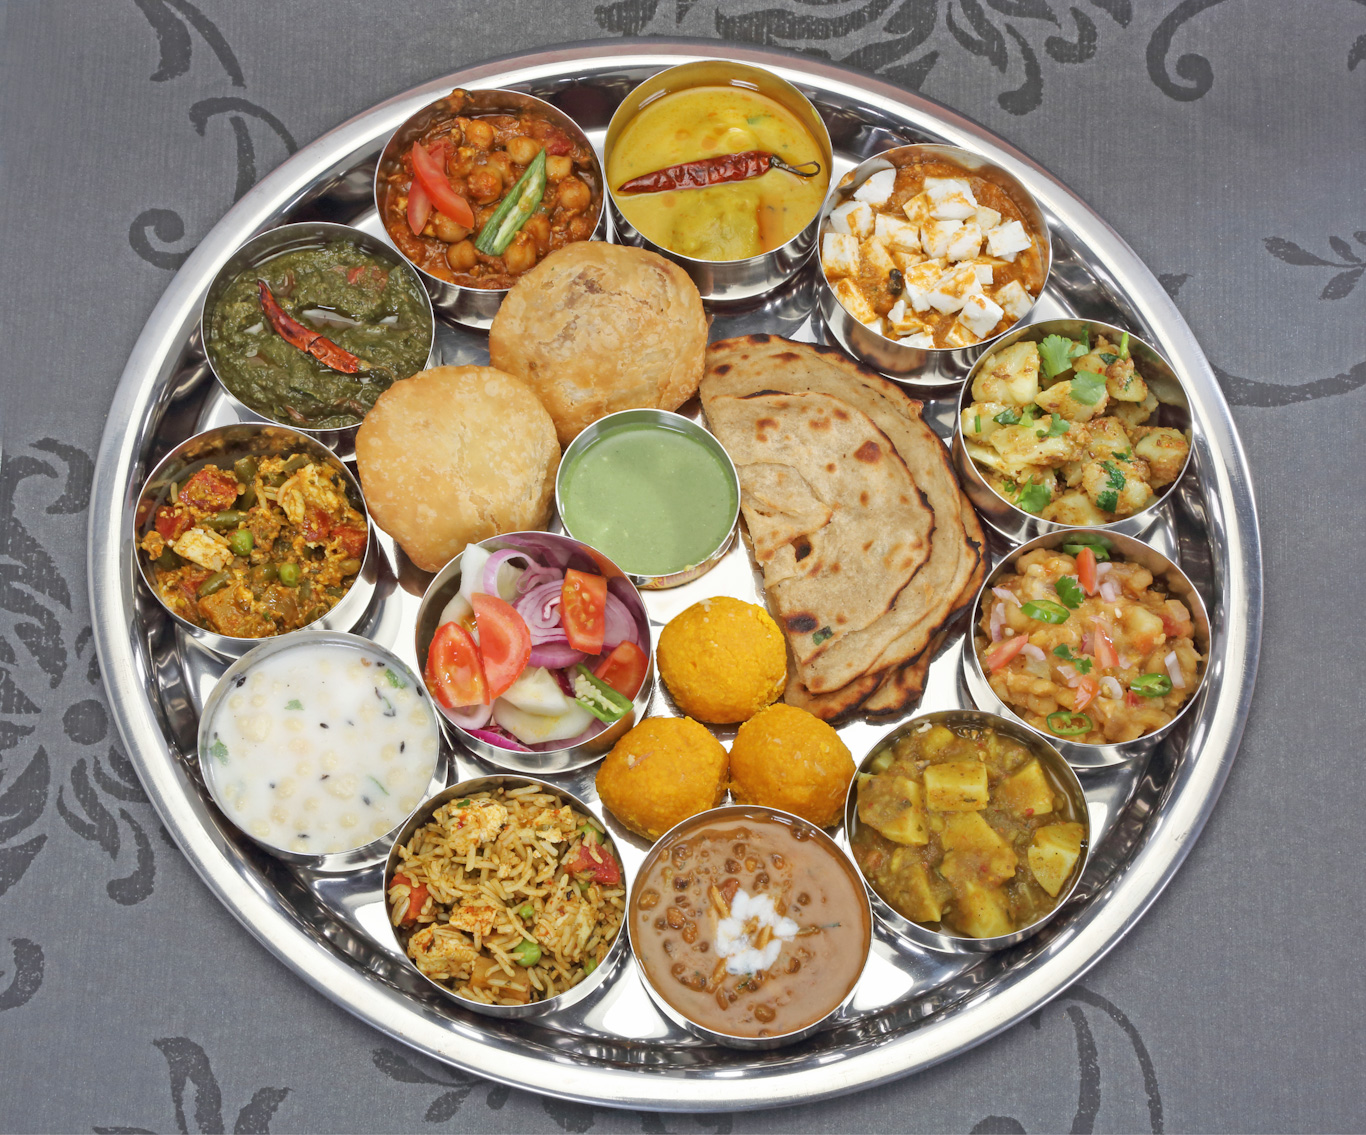 Thali con mucha variedad de platos tradicionales